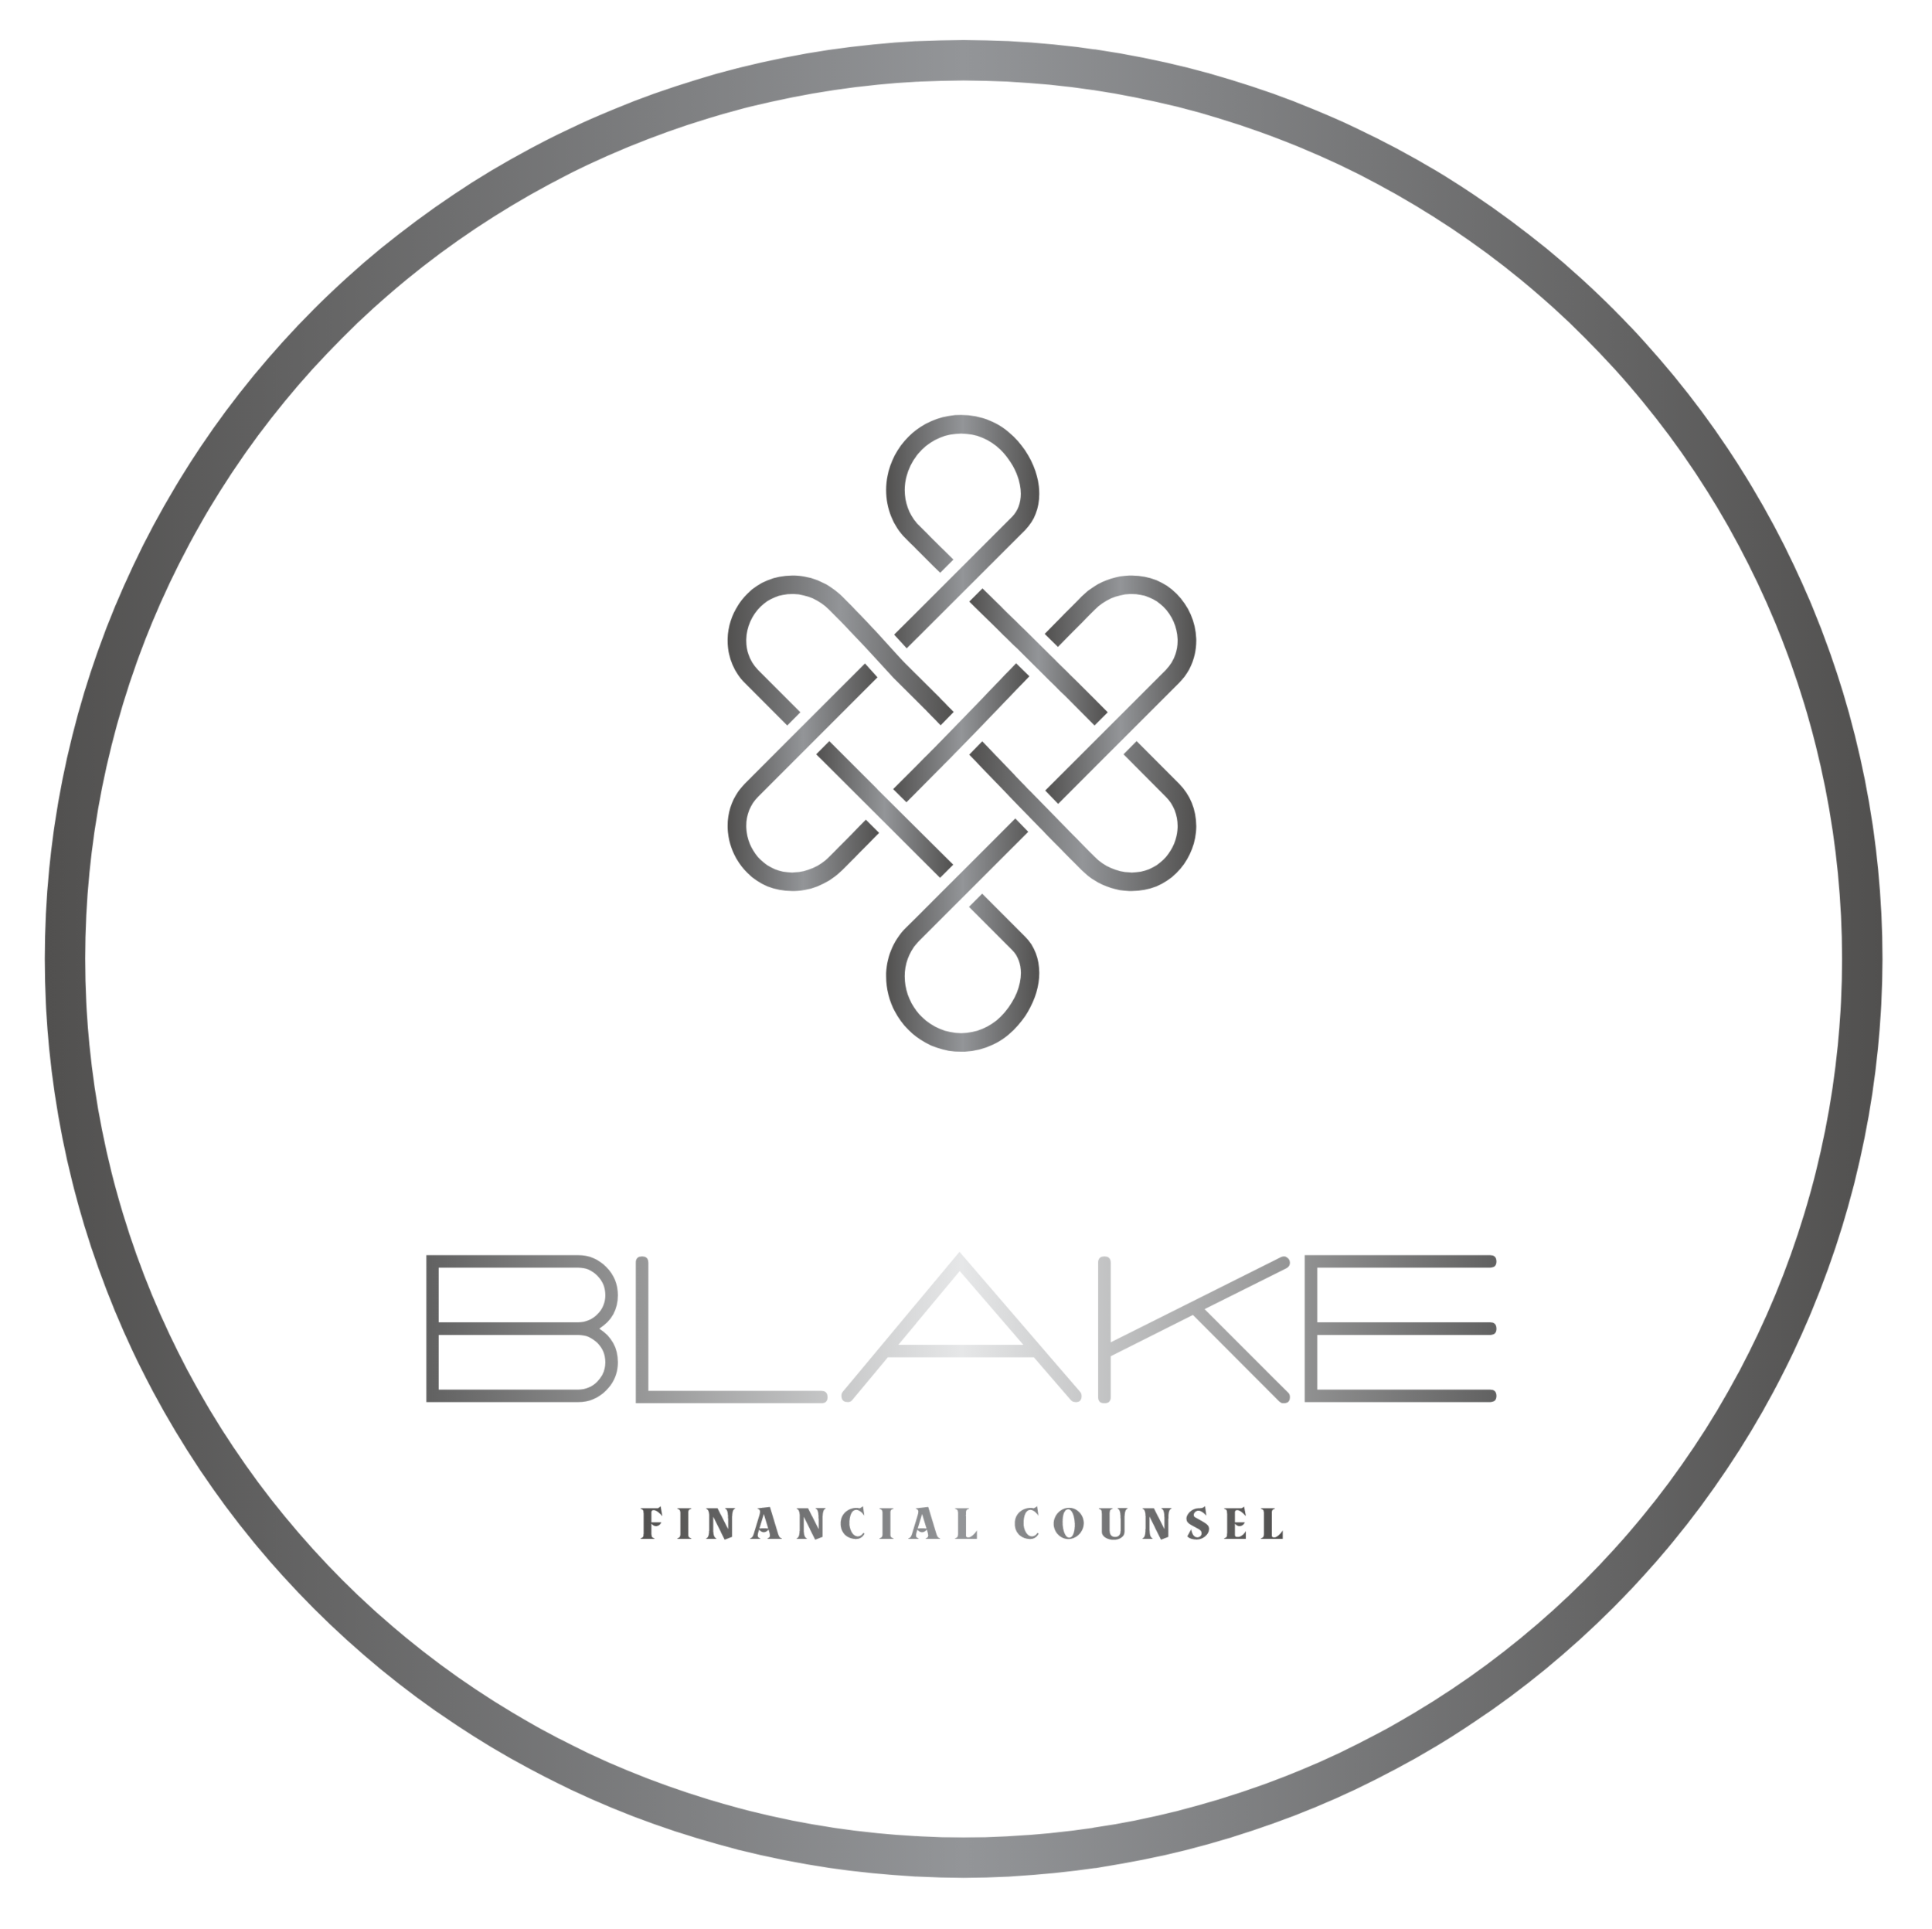 Blake Financial Counsel